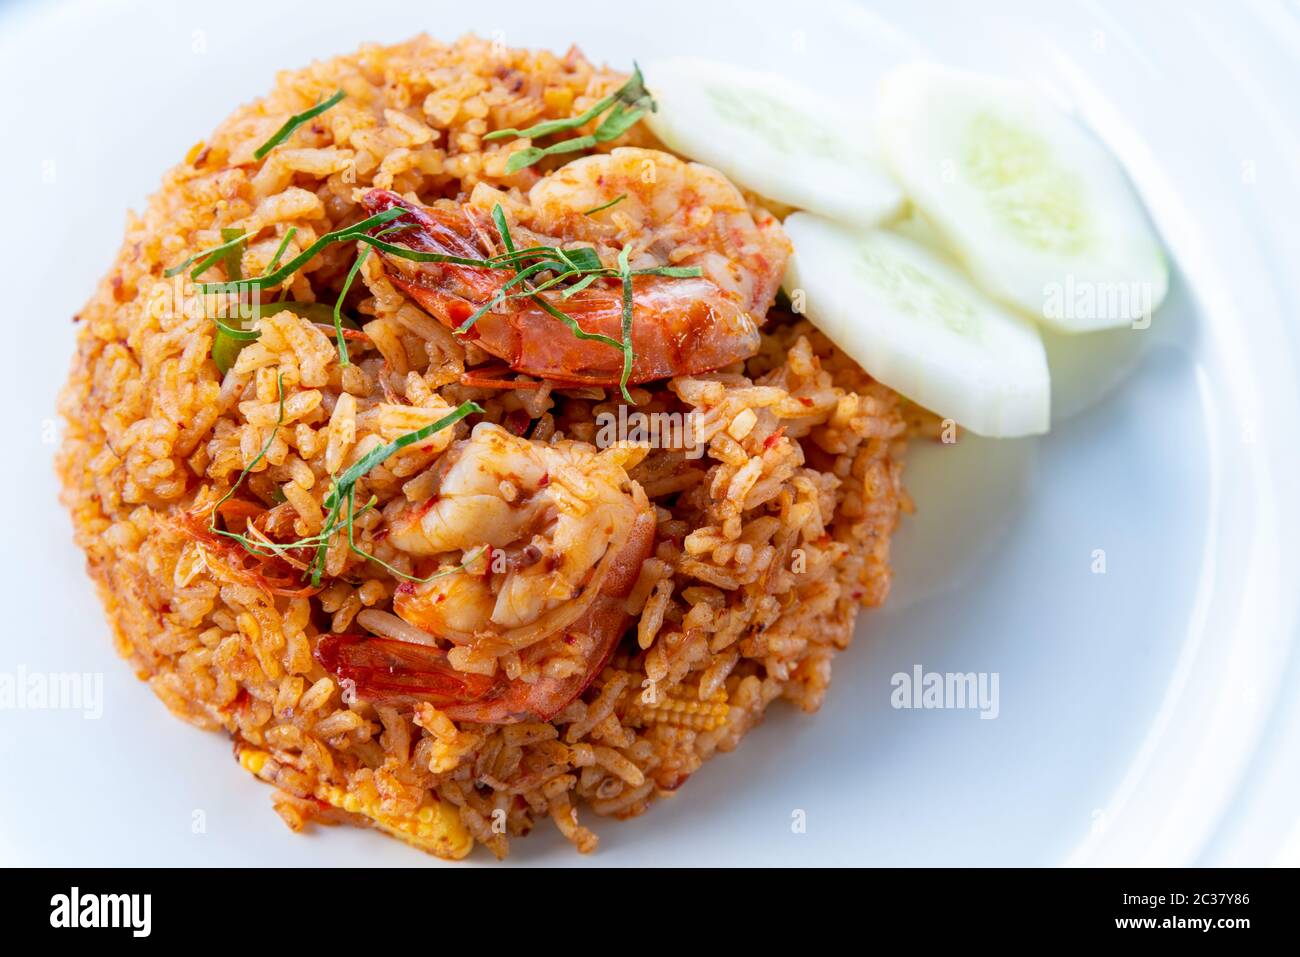 Pikante thailändische Küche oder asiatische Küche Closeup Draufsicht Garnele Red Curry Fried Rice Meeresfrüchte, Garnierung mit zerfetzten Kaffir-Kalkblättern und geschnittene Gurken auf einem c Stockfoto